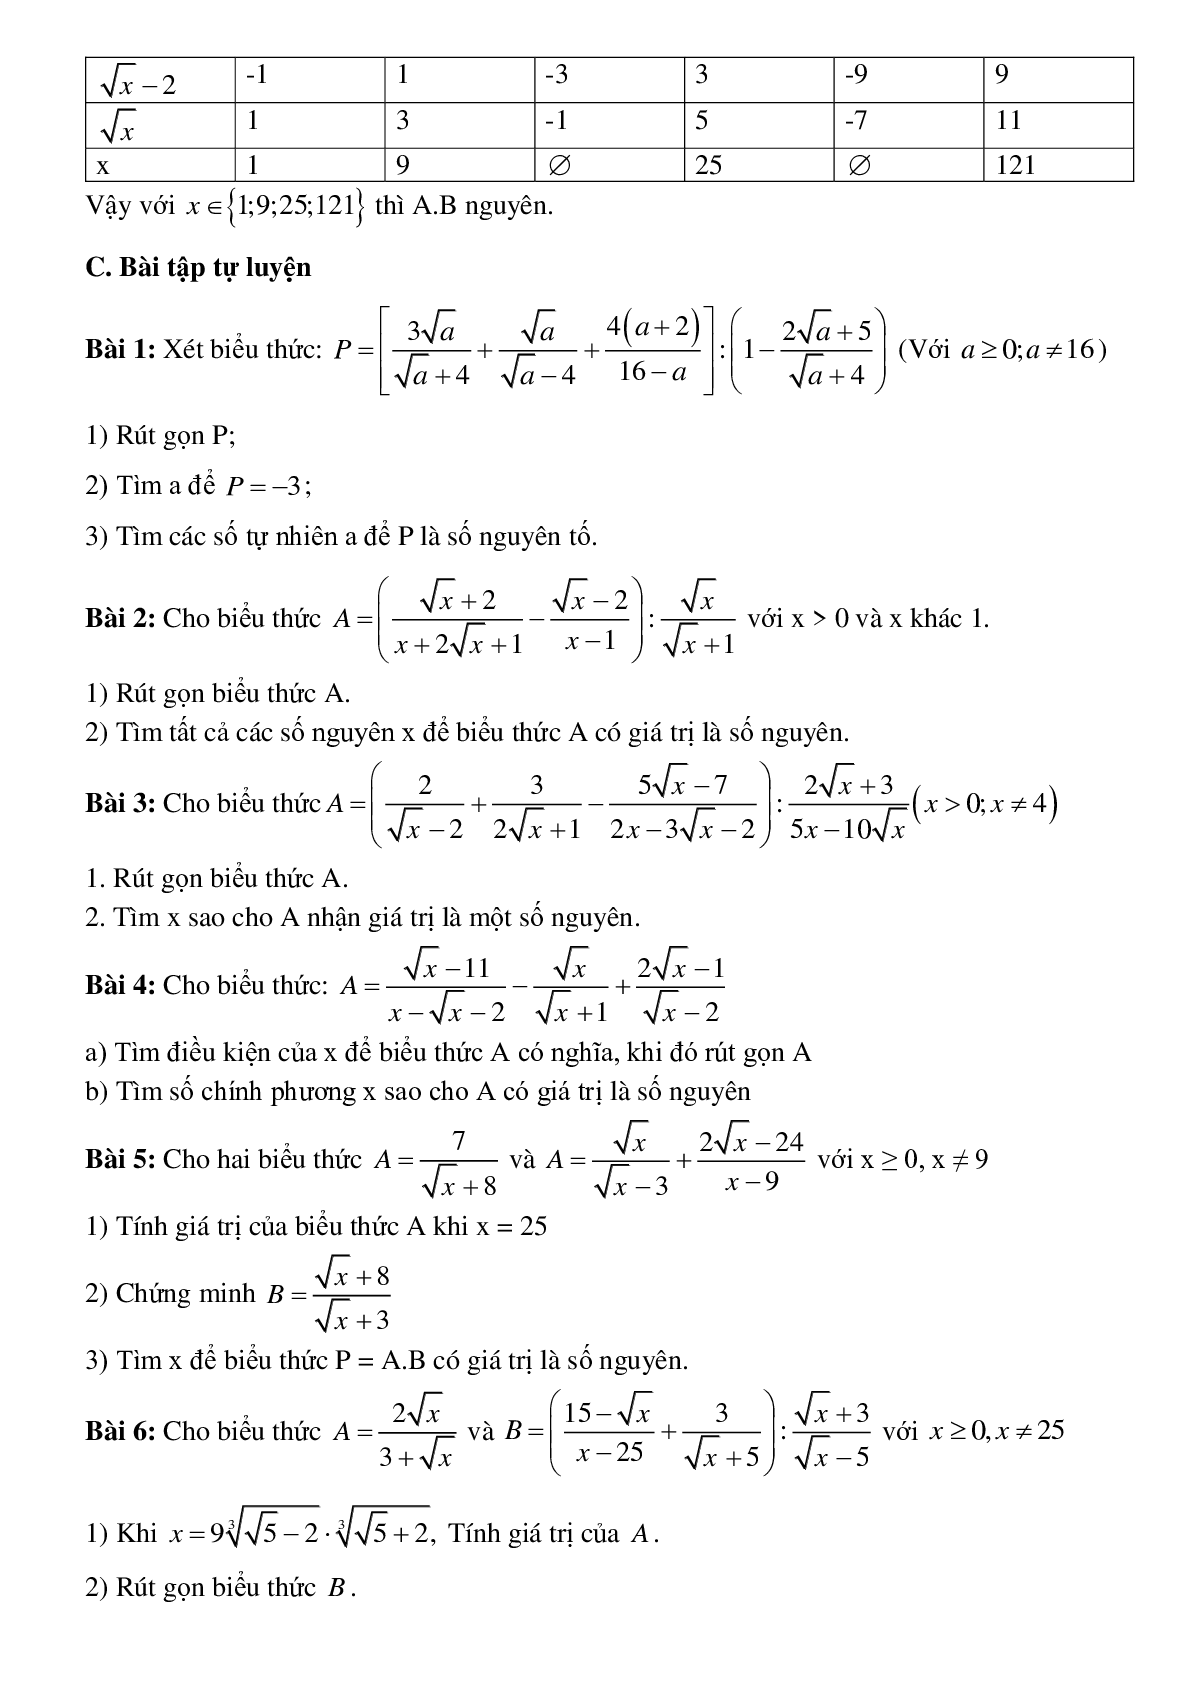 Phương pháp giải tìm x để biểu thức đạt giá trị nguyên chọn lọc (trang 5)